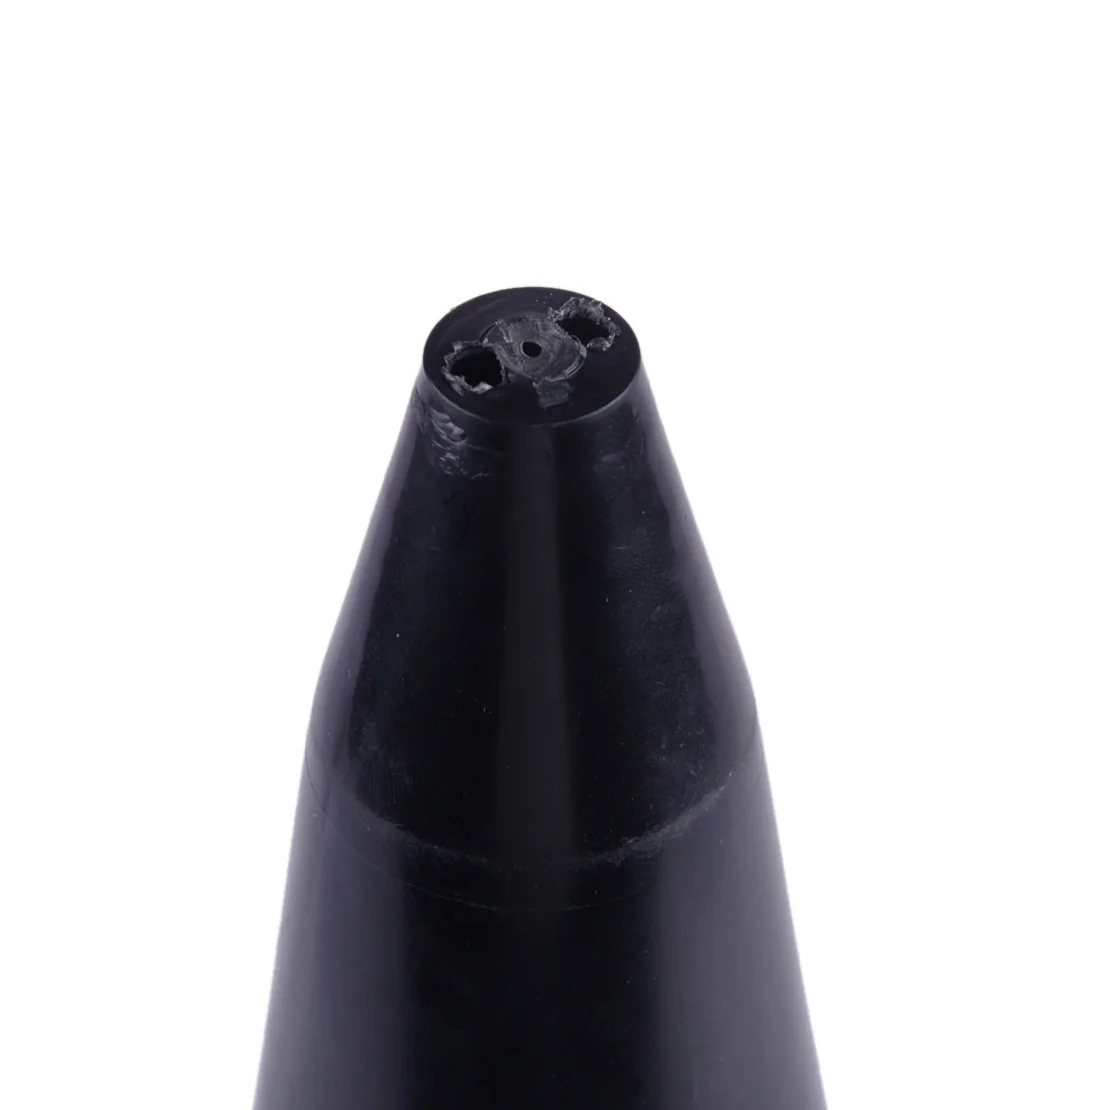 CITALL пластик черный стрейч CV загрузки конусный инструмент для универсальные облегающие Стрейчевые CV загрузки гетры